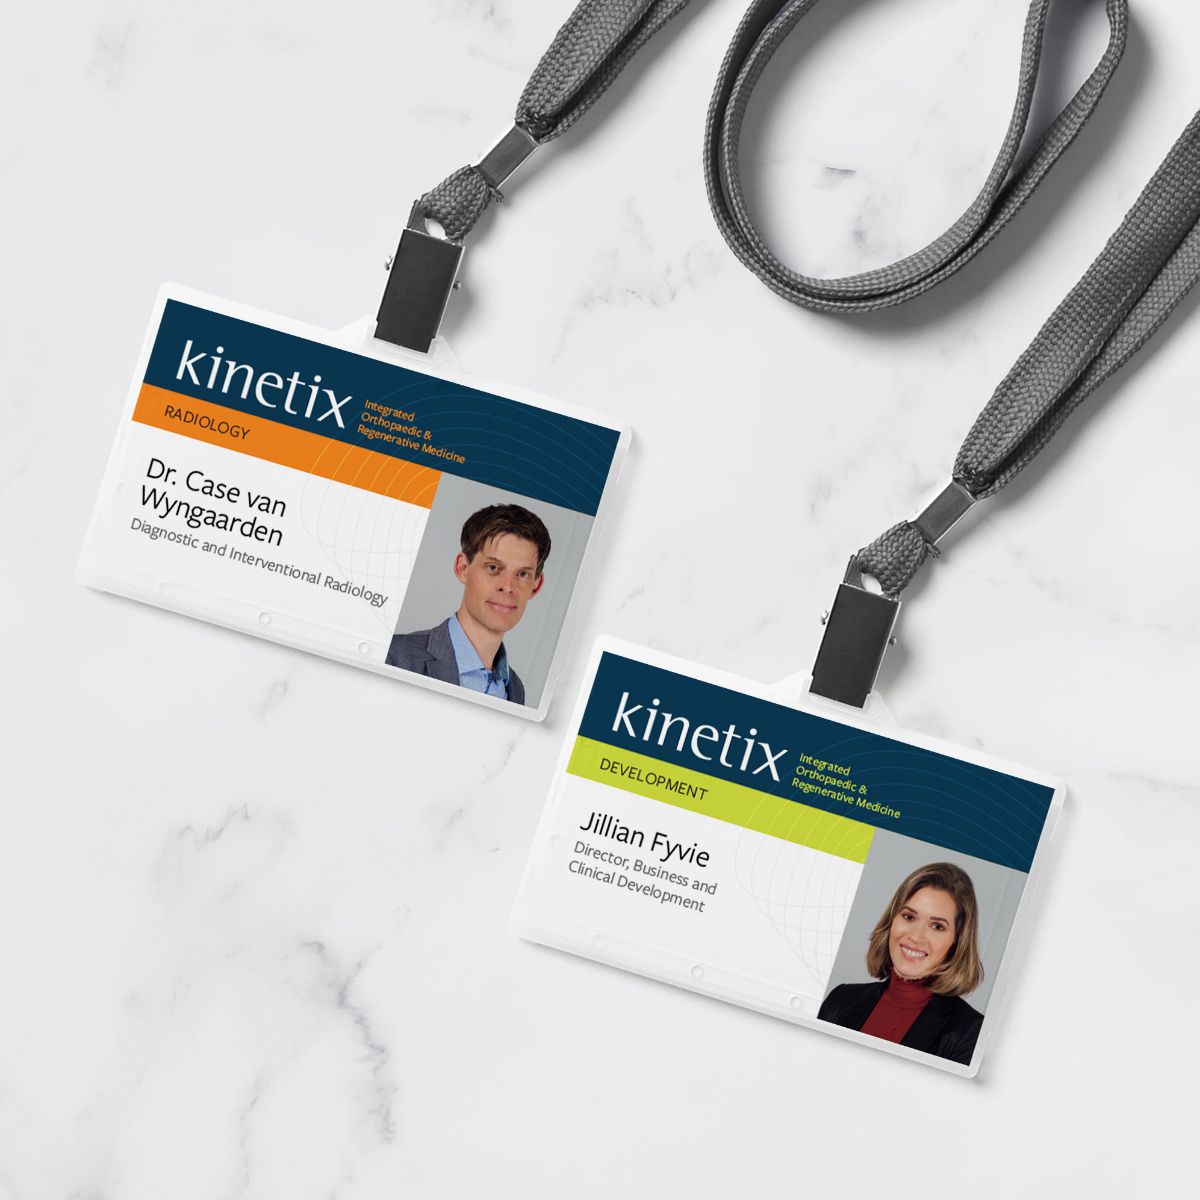 Kinetix: Integrated Orthopaedic Medicine Staff ID cards on lanyards